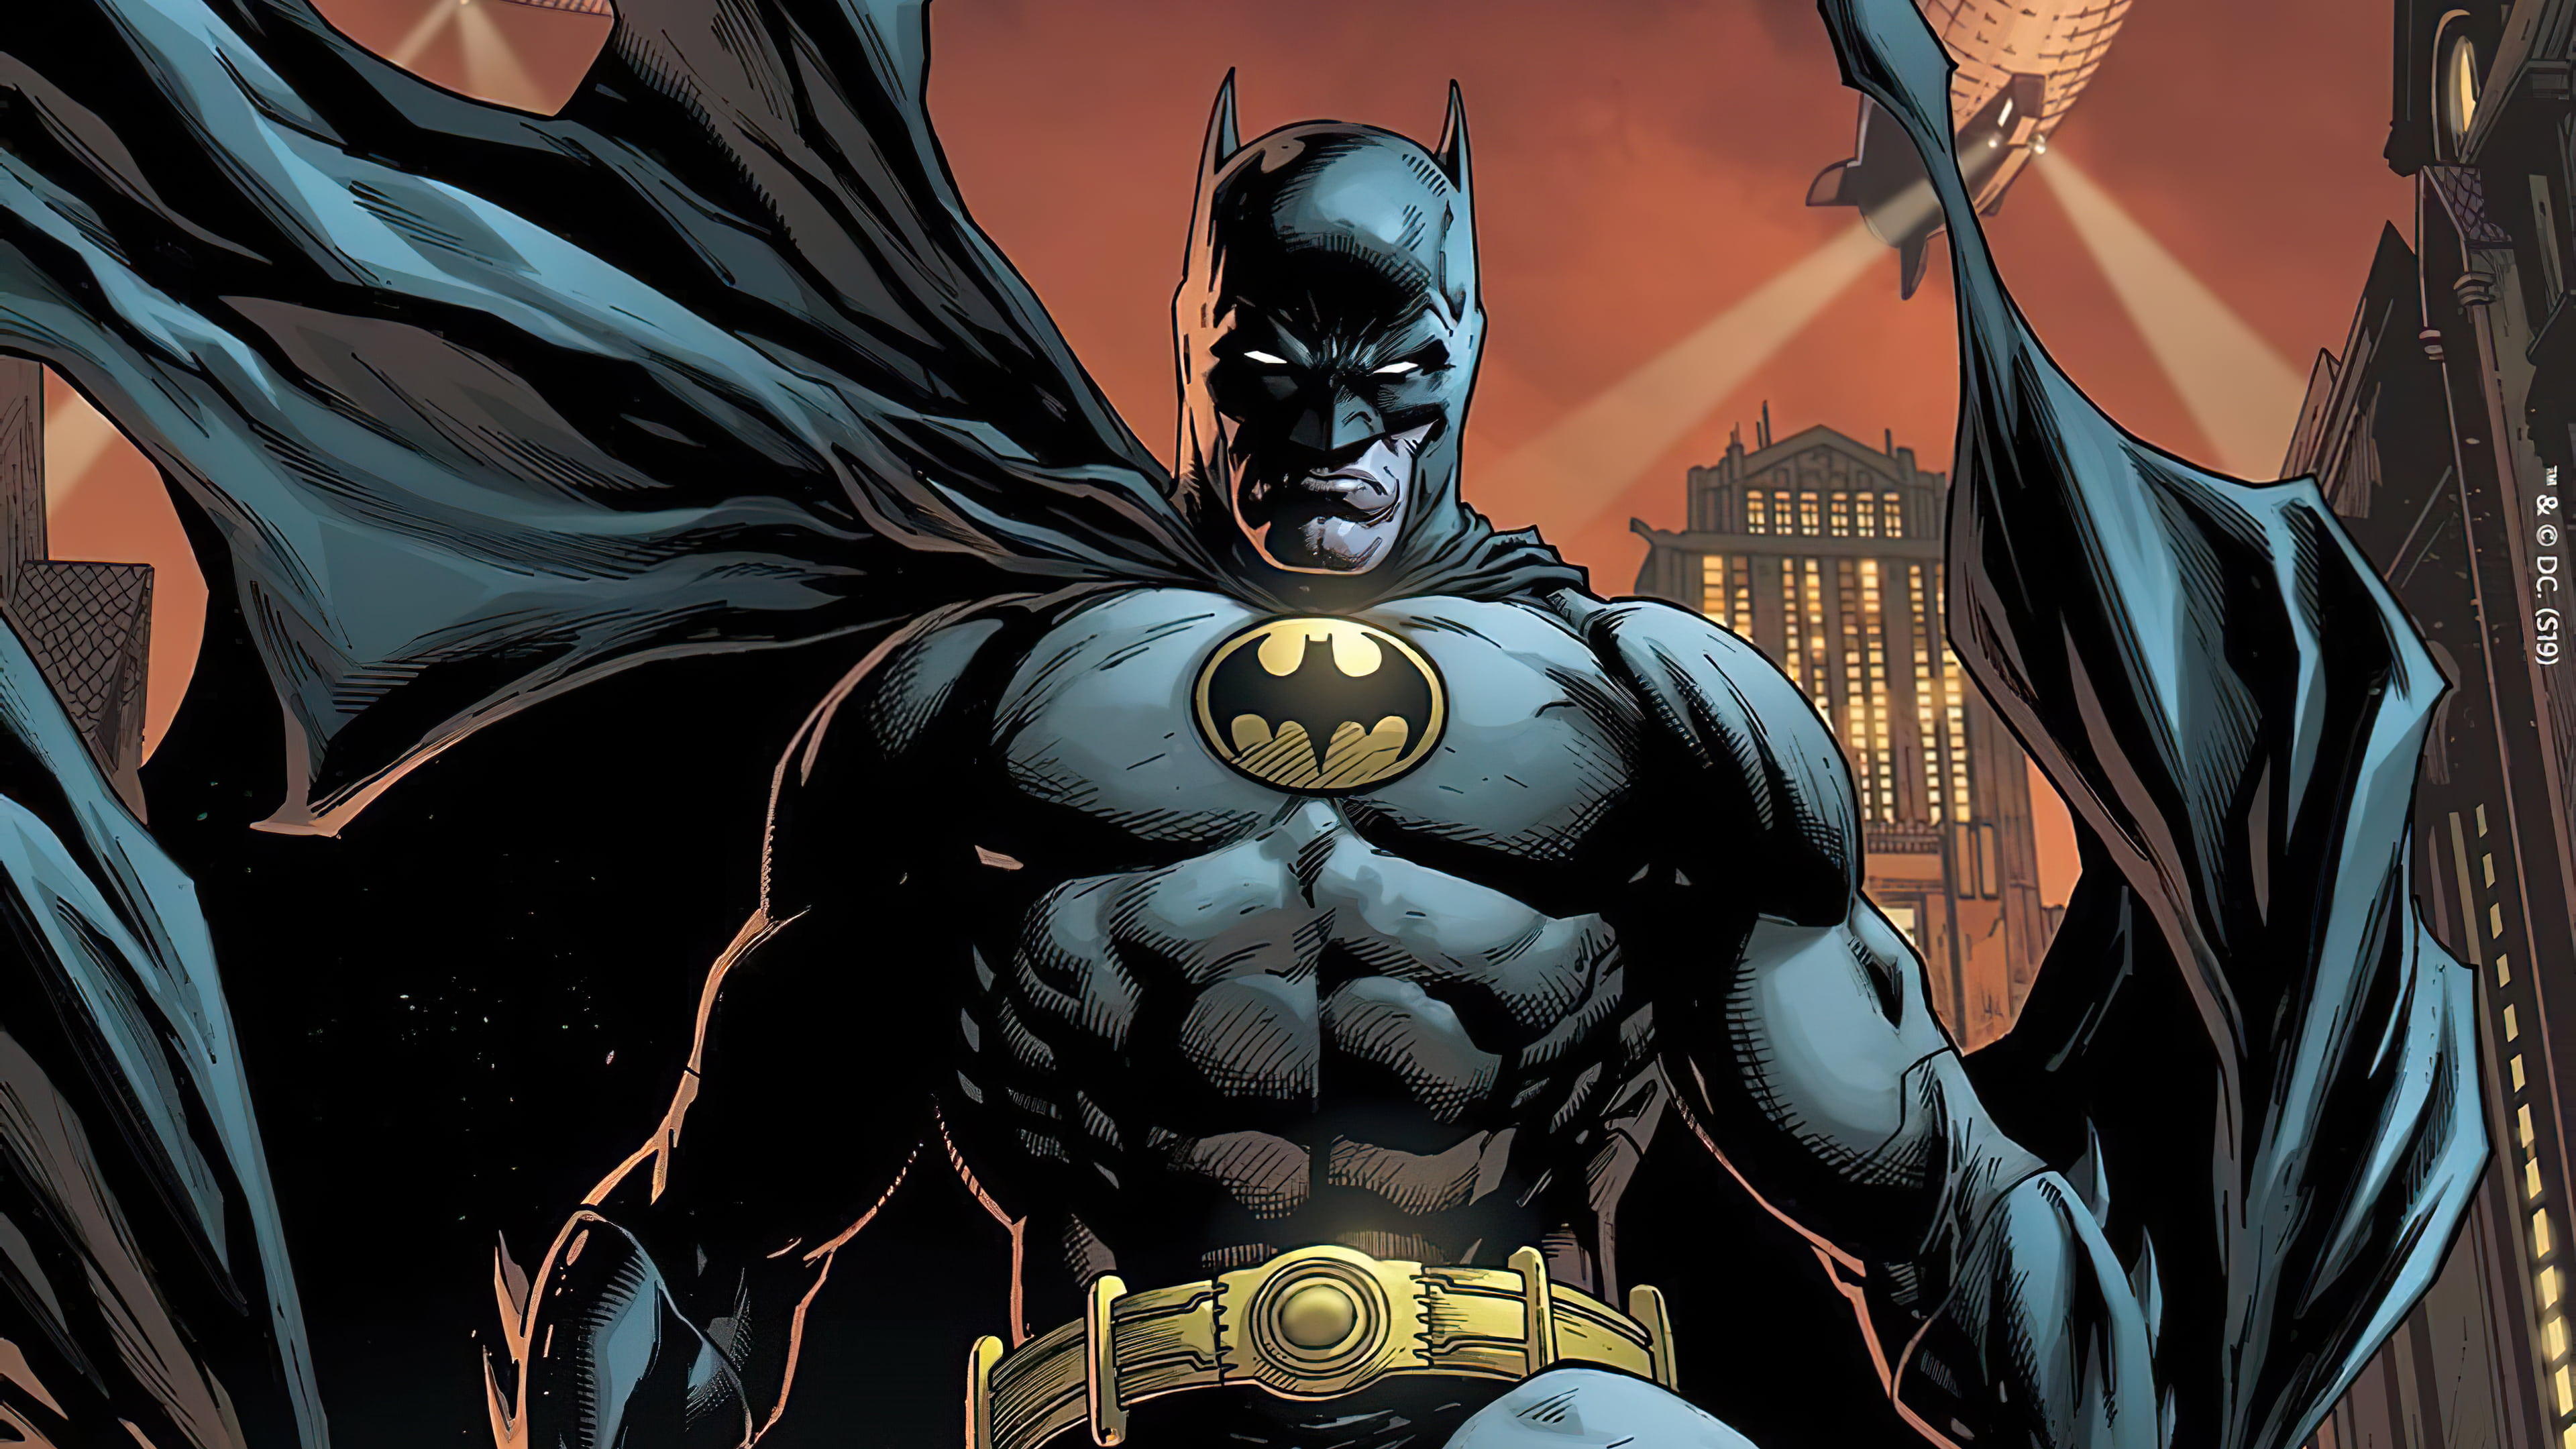 Batman Dc Comics Comic Art Bodysuit Superhero X Wallpaper Wallhaven Cc